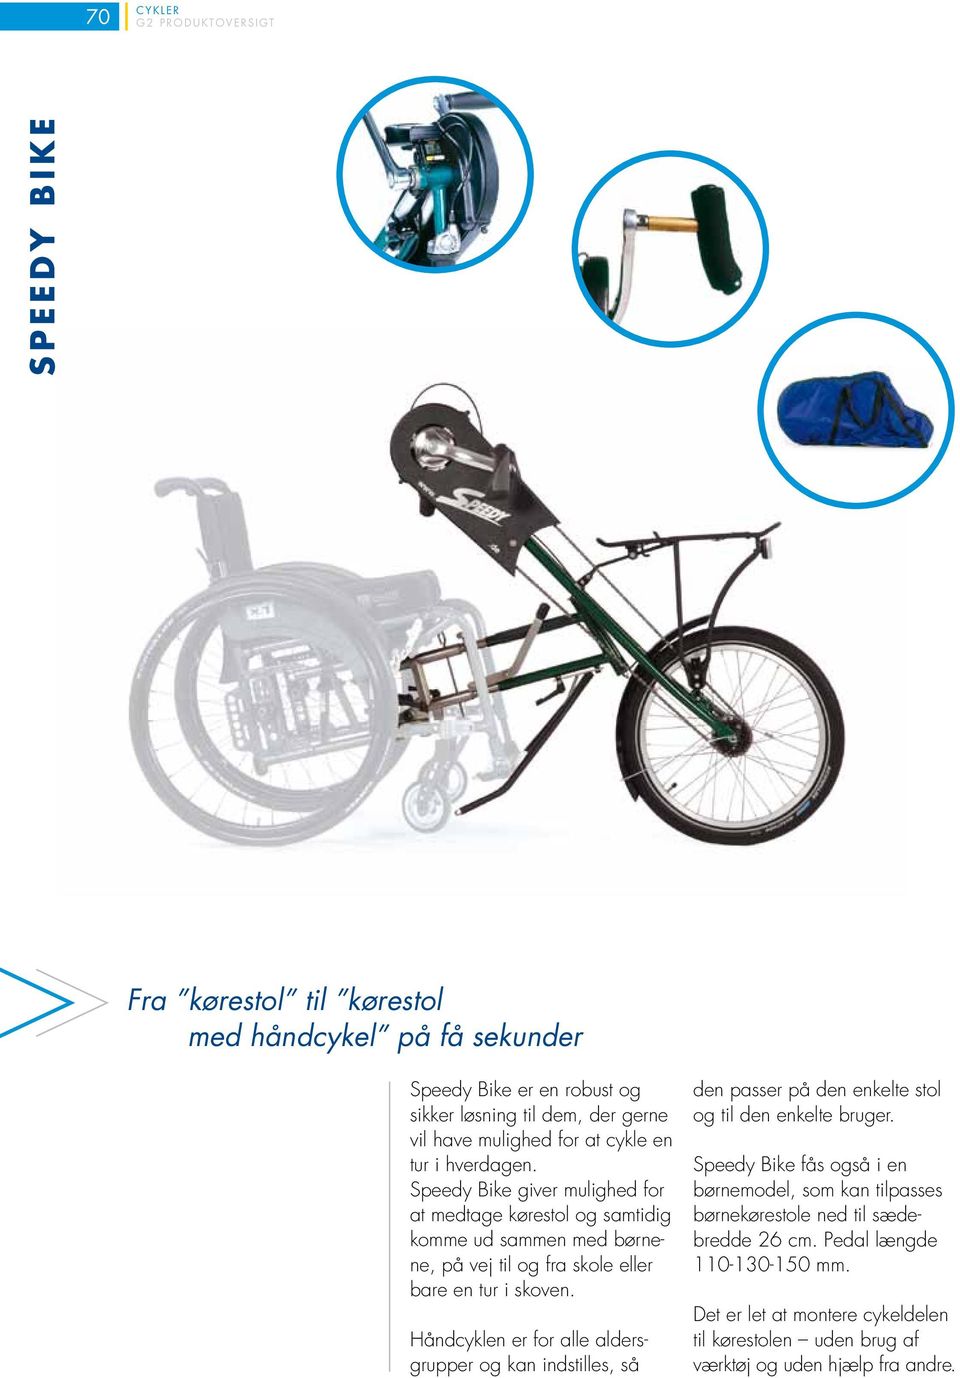 Speedy Bike giver mulighed for at medtage kørestol og samtidig komme ud sammen med børnene, på vej til og fra skole eller bare en tur i skoven.